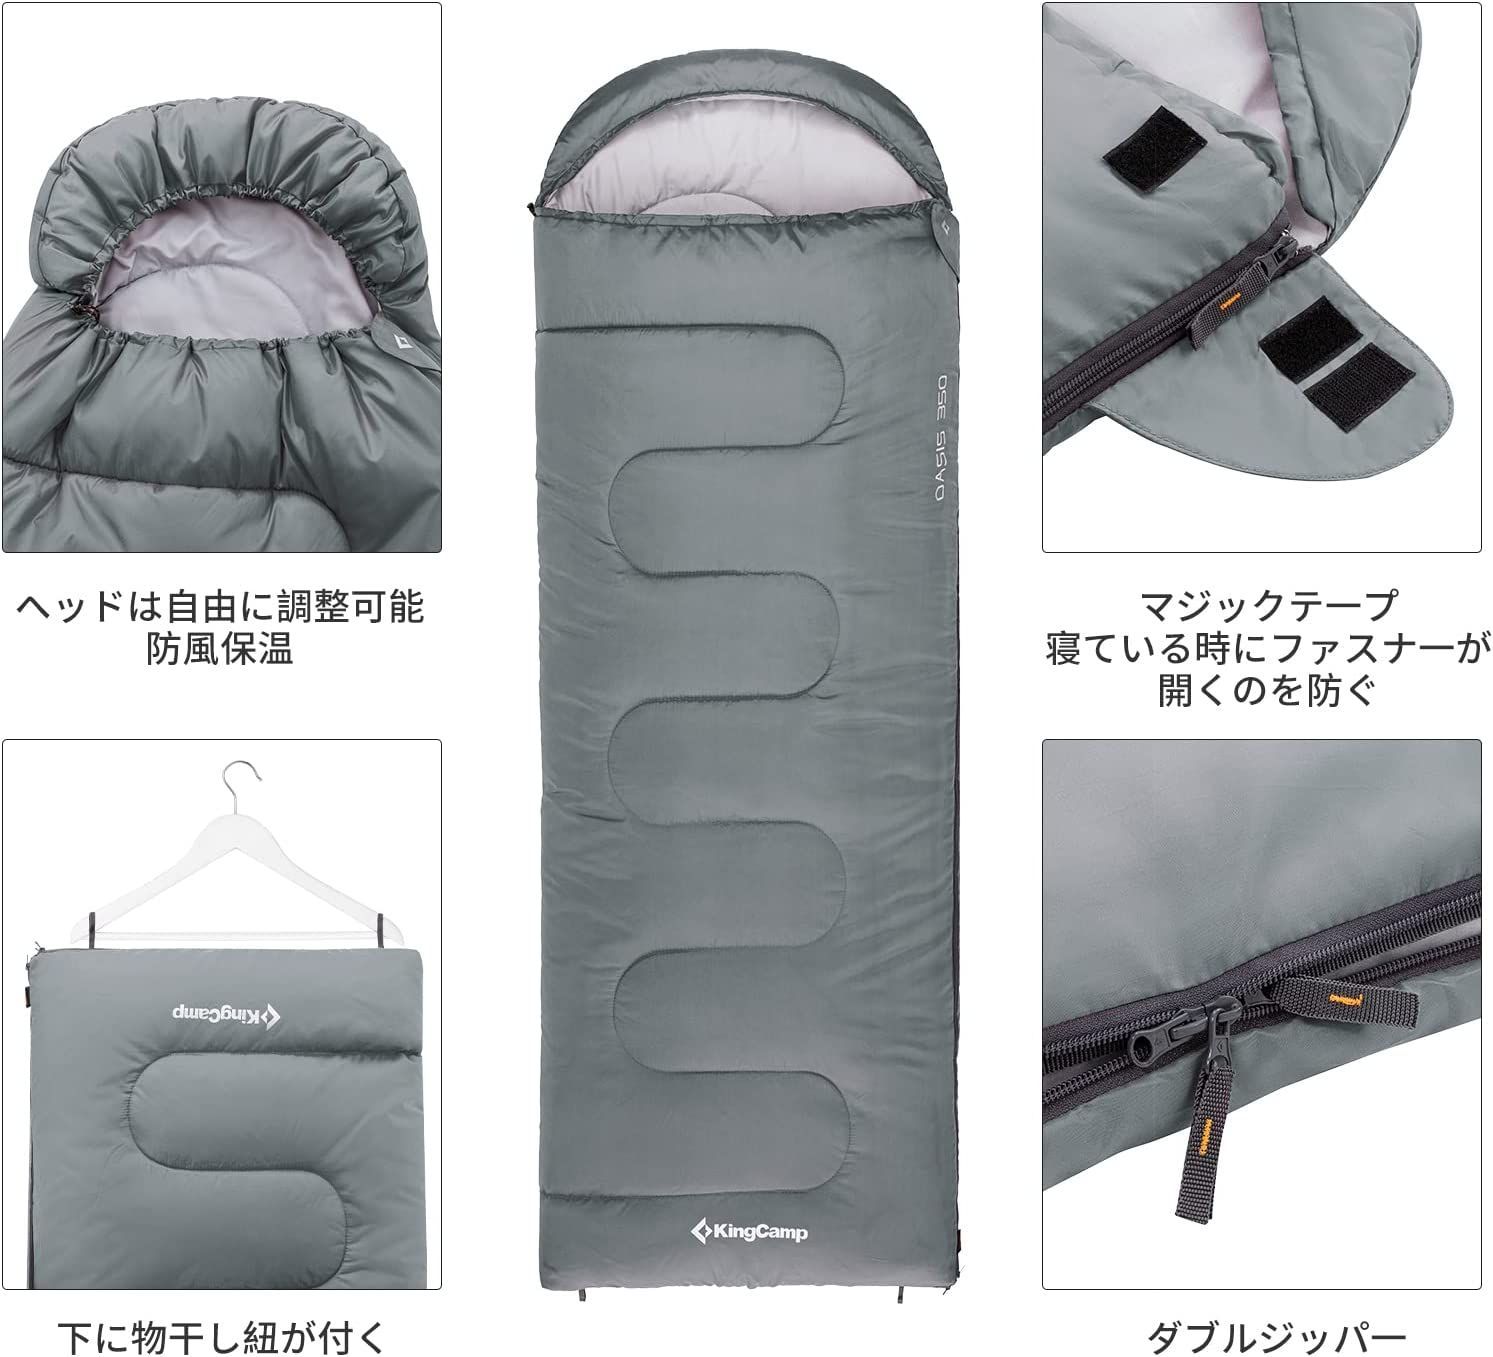 グランピング新品未使用 枕付き フルスペック 封筒型寝袋 -15℃ ネイビー シュラフ 3個